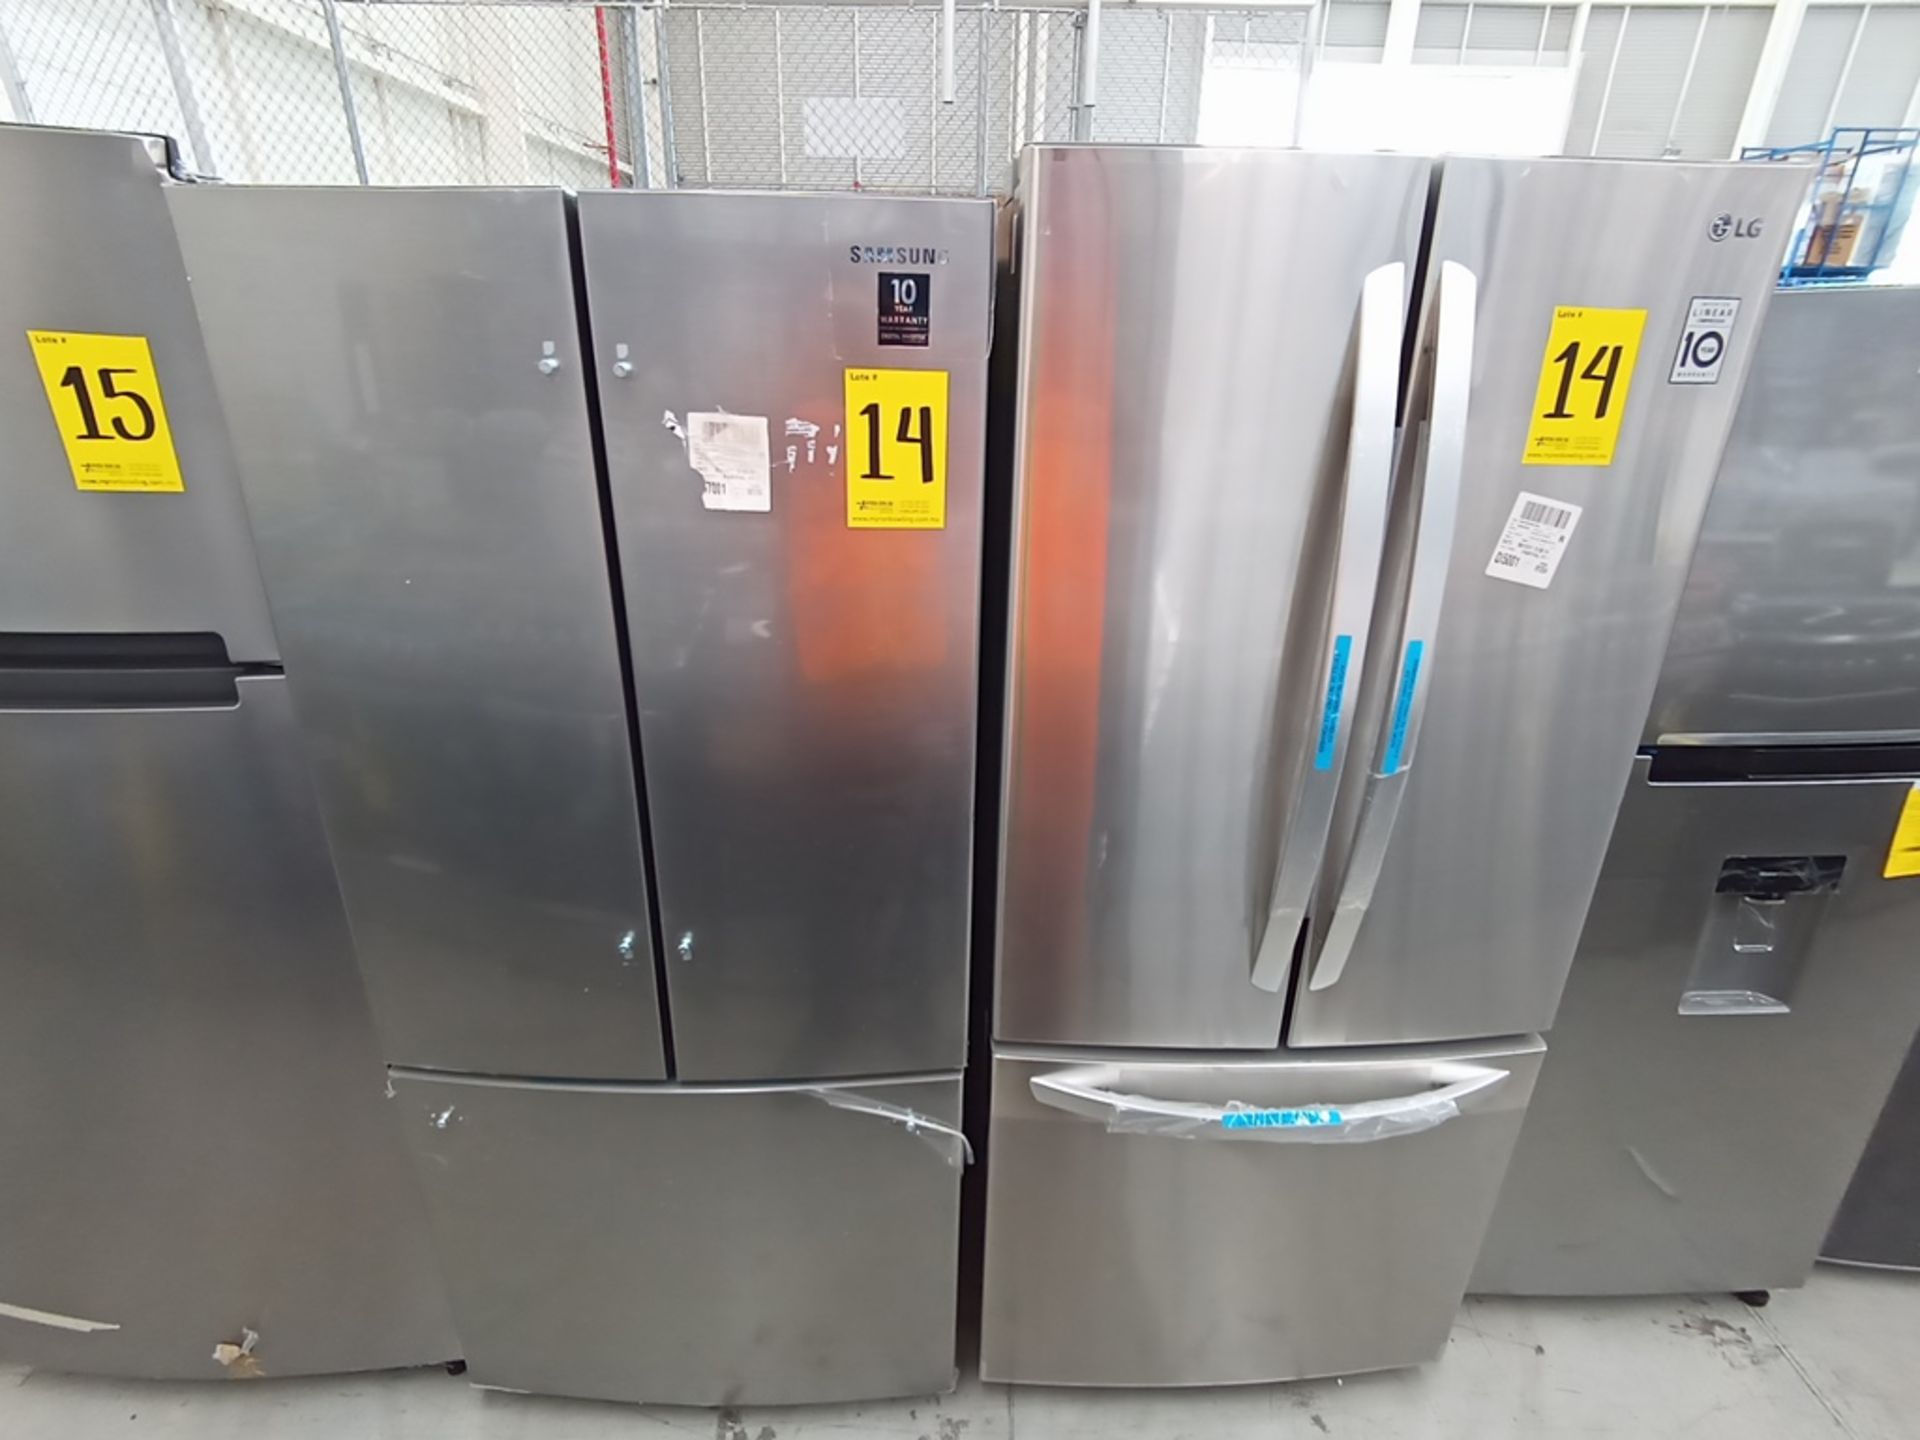 Lote de 2 refrigeradores contiene: 1 Refrigerador Marca LG, Modelo GF22BGSK, Serie 107MRMD4S595, Co - Image 3 of 16